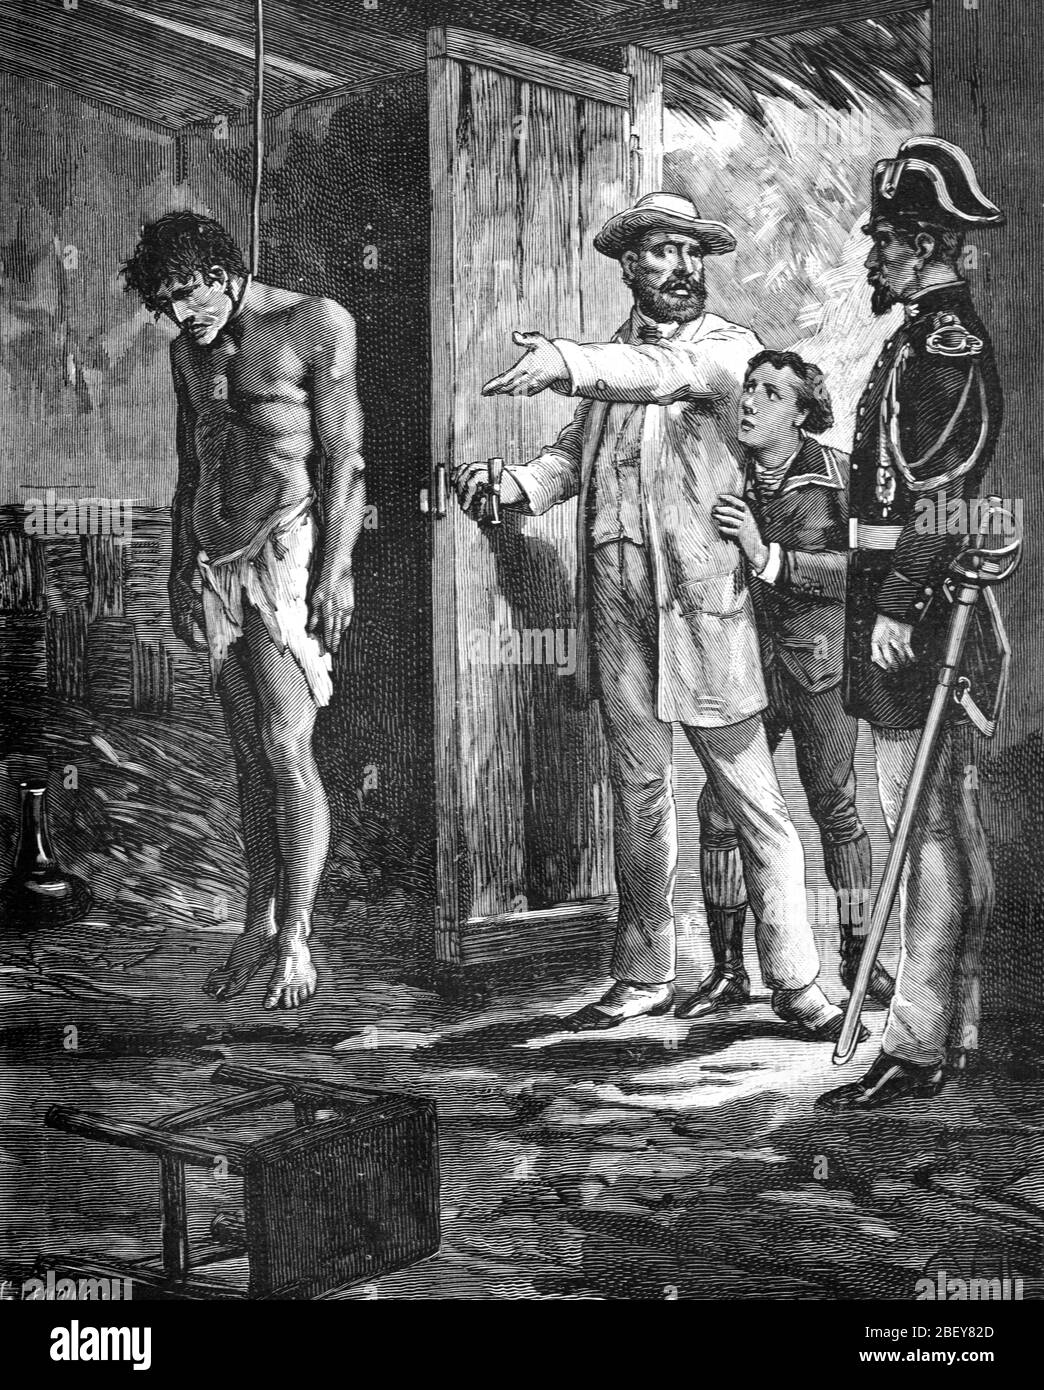 Indischer Immigrant oder indentured Arbeiter Selbstmord durch Hanging in La Reunion oder den französischen Kolonien. Vintage oder Alte Illustration oder Gravur 1888 Stockfoto